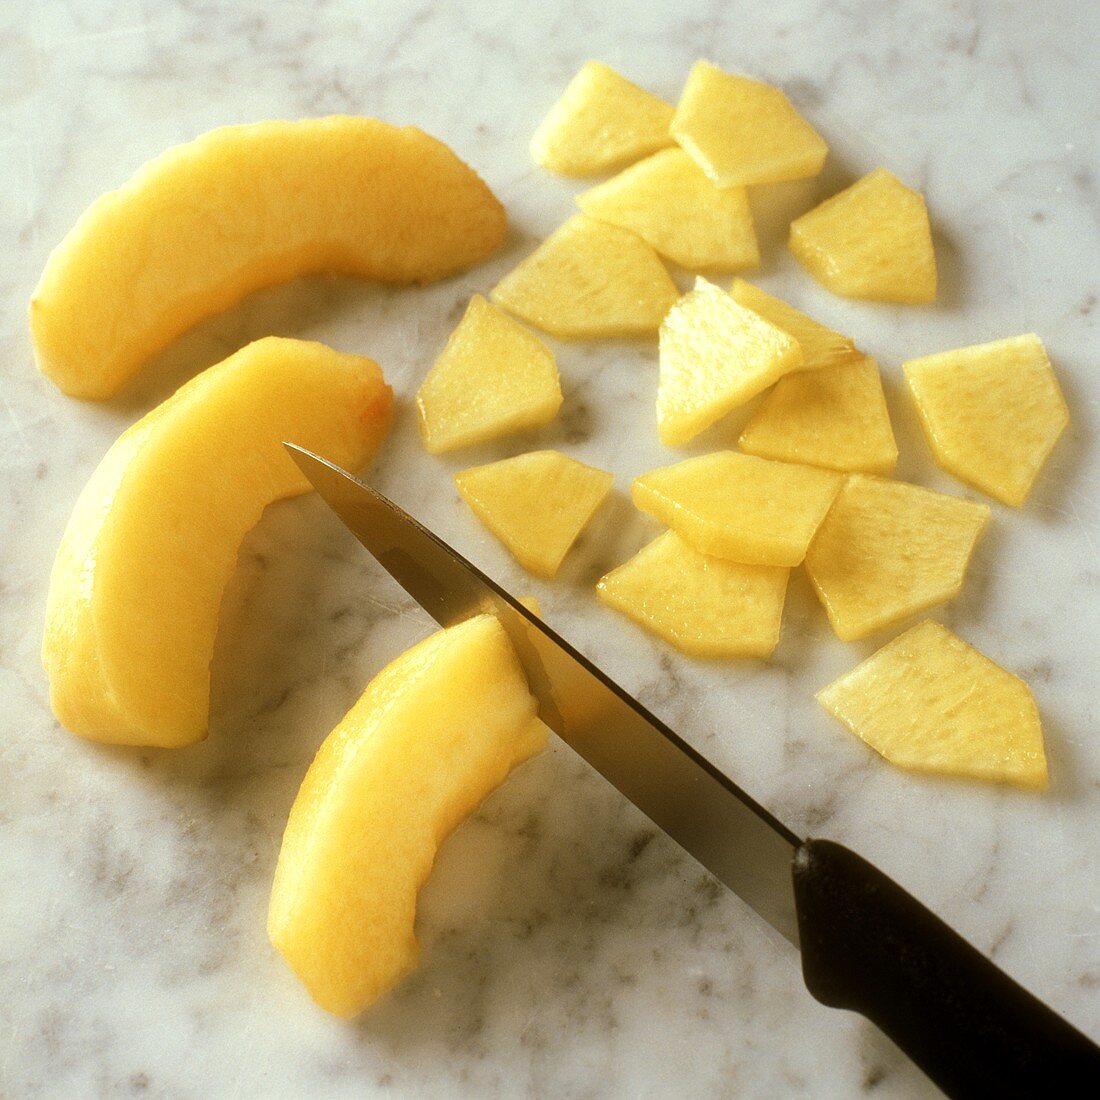 Chopping peach slices